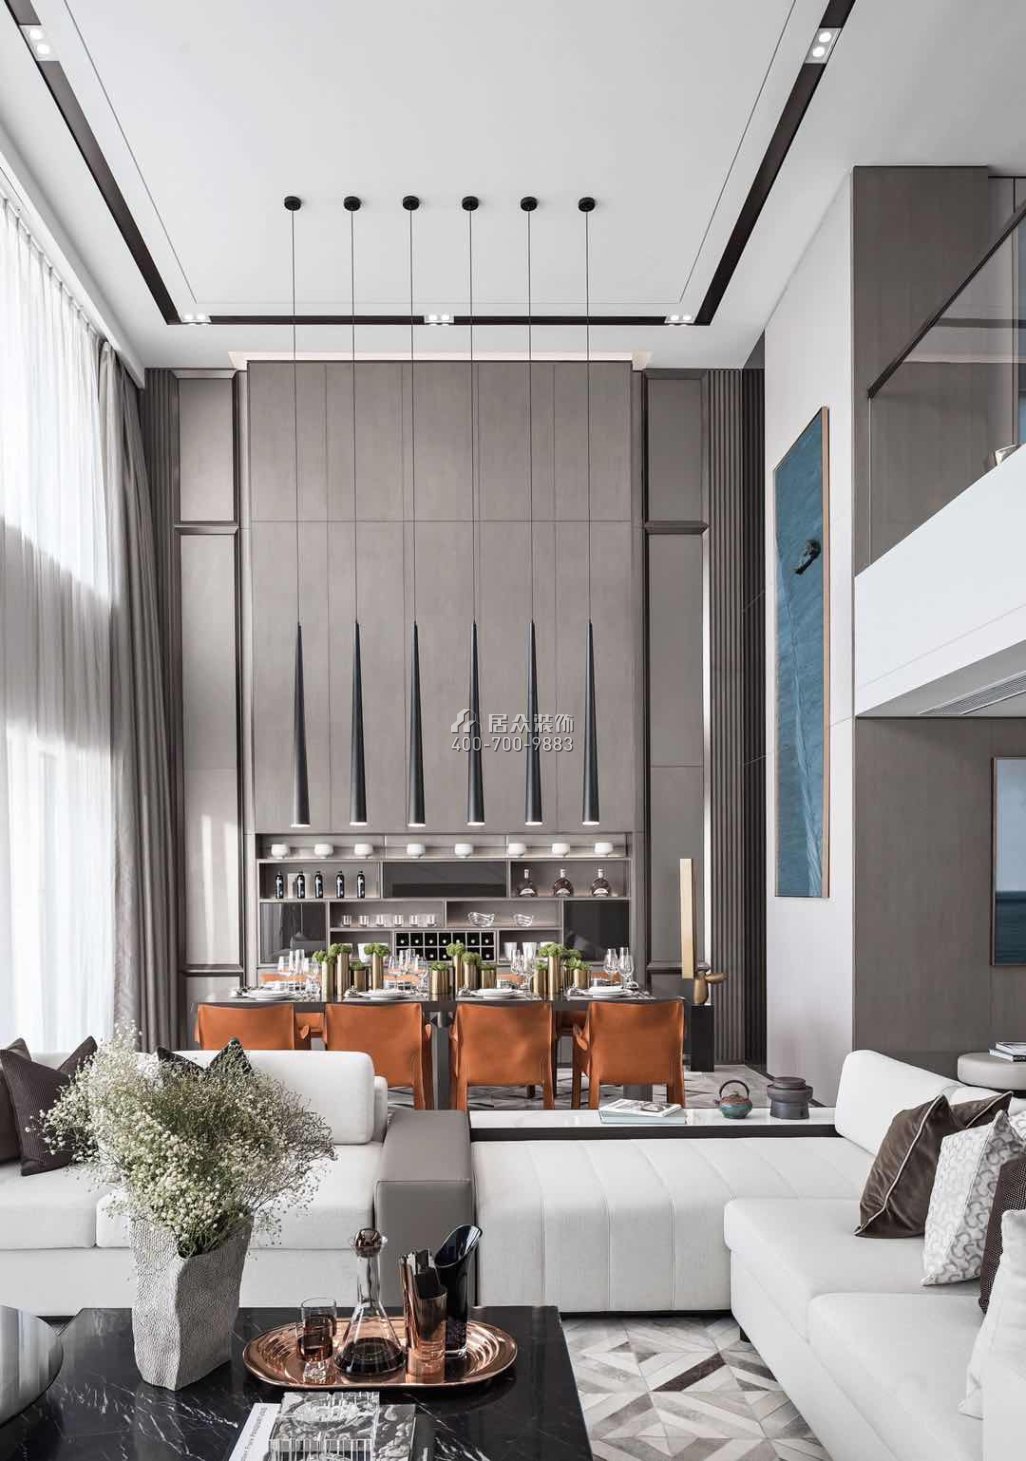 華發世紀城228平方米現代簡約風格平層戶型客廳裝修效果圖